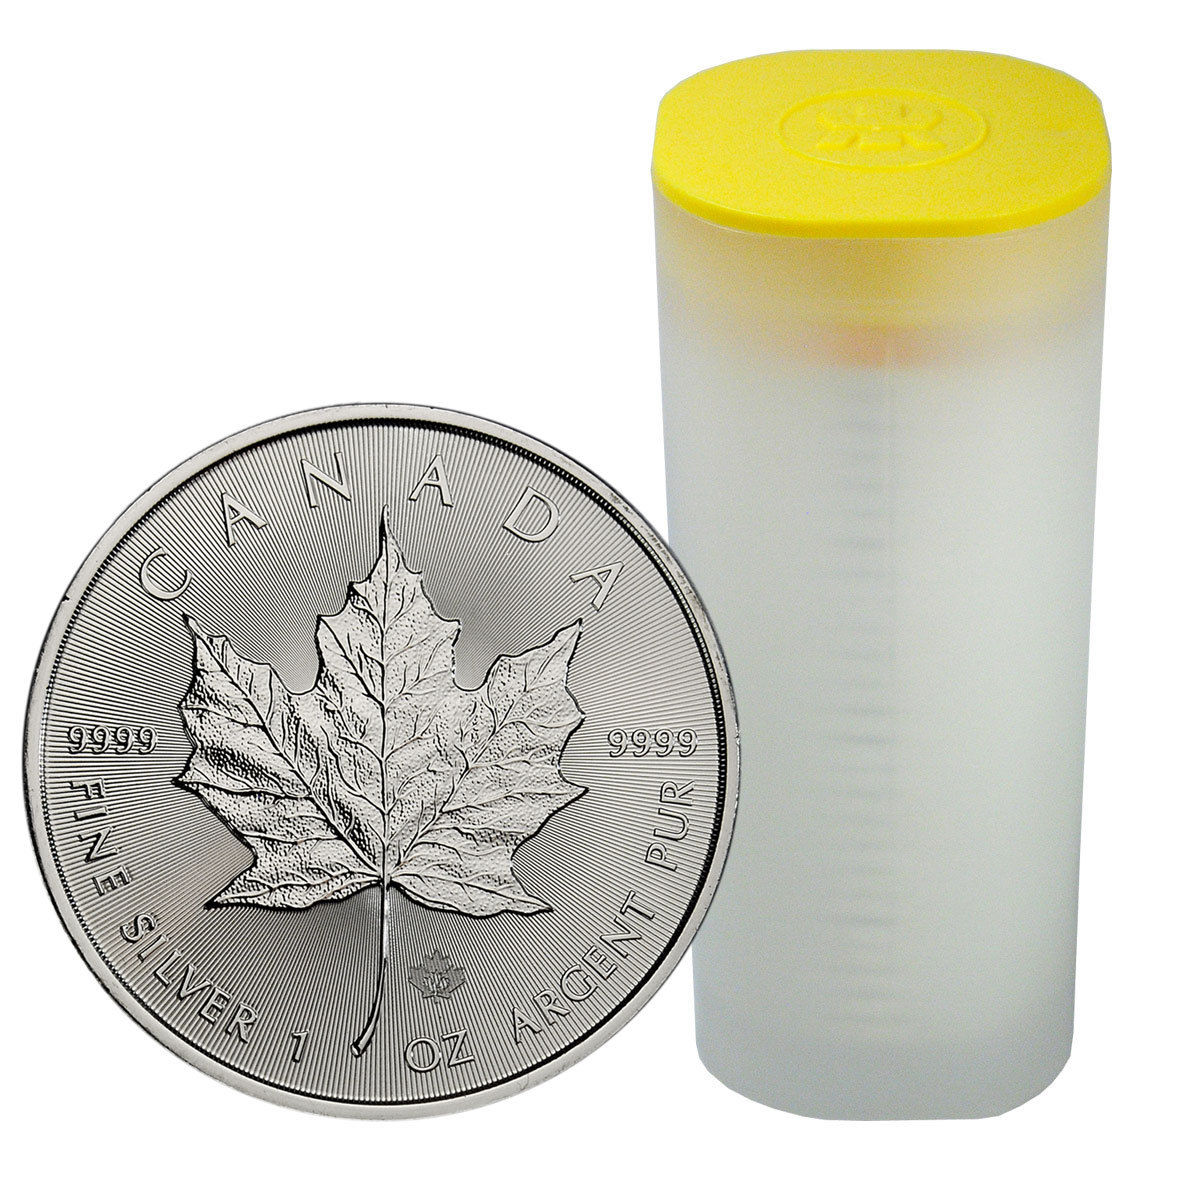 2017 Canada $5 1 oz. Silver Maple Leaf Roll of 25 Coins SKU44169